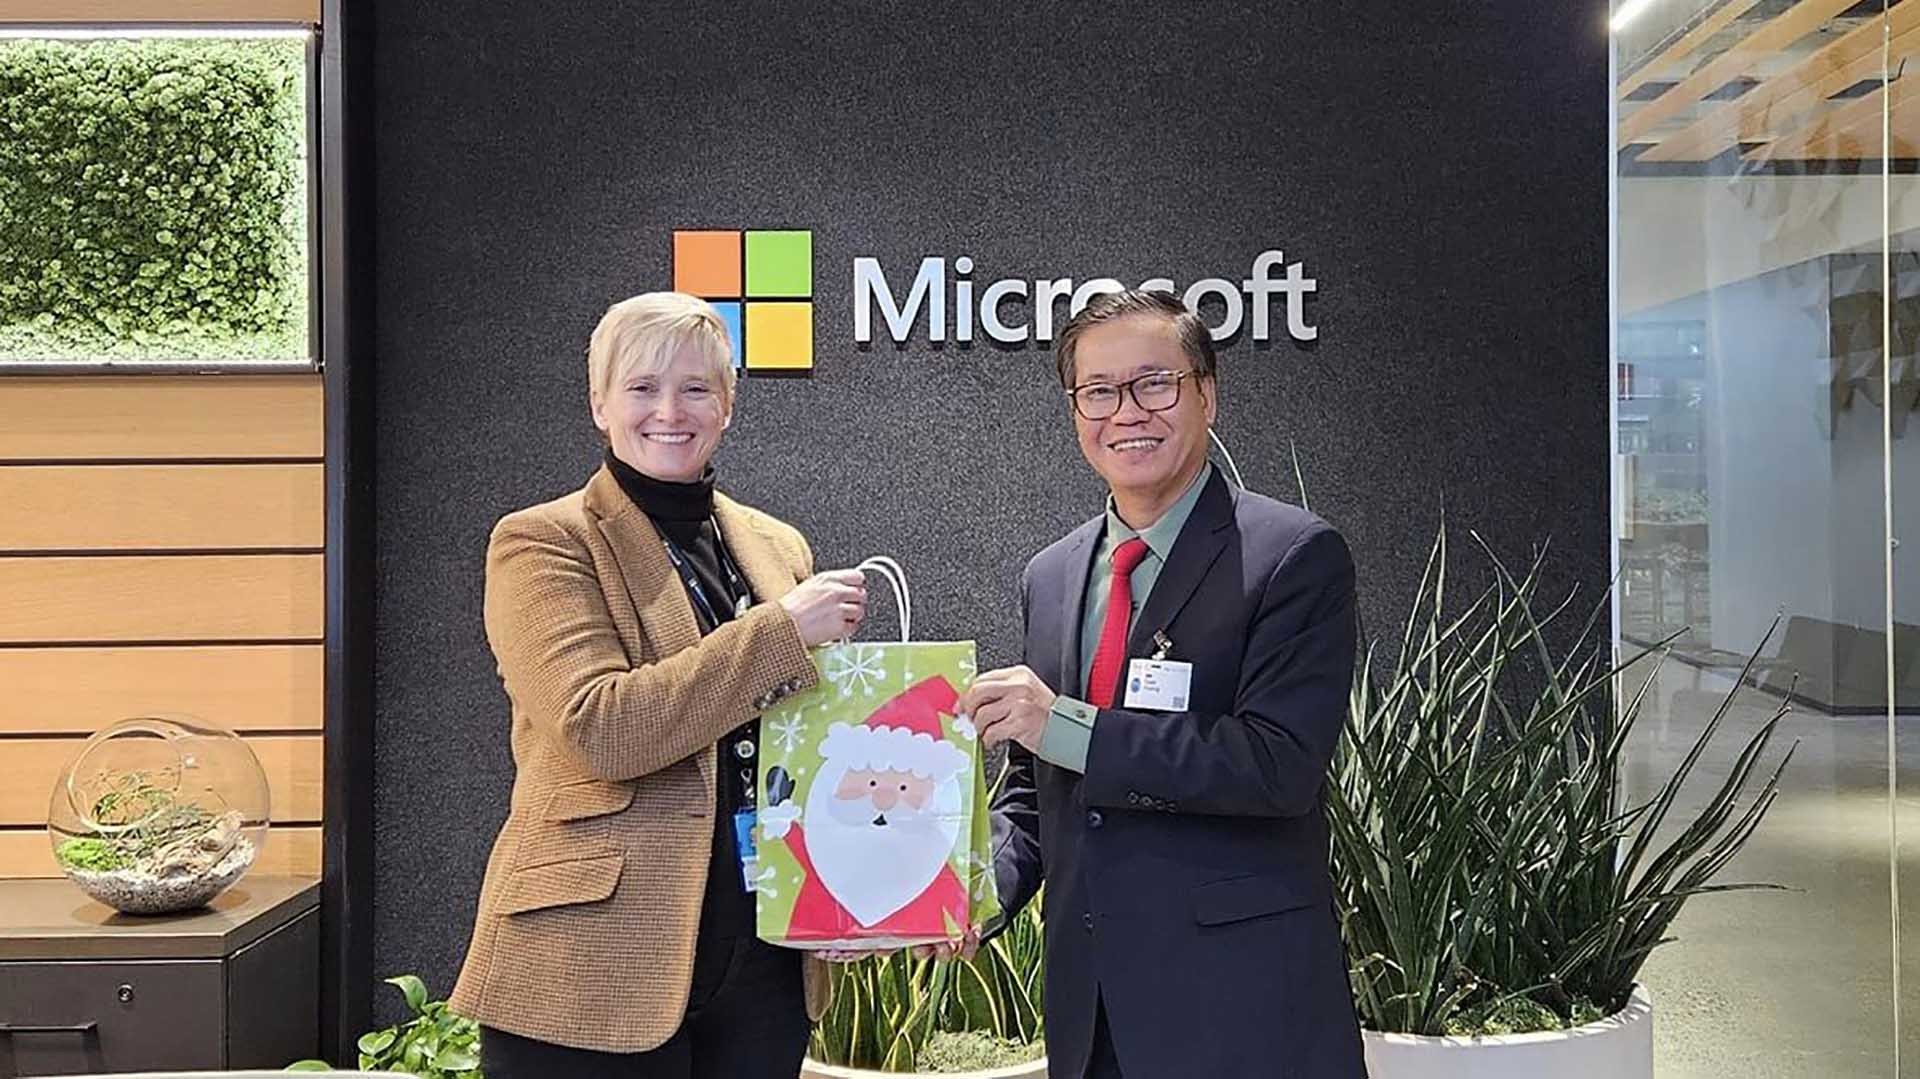 Tổng lãnh sự Hoàng Anh Tuấn làm việc với Microsoft. 